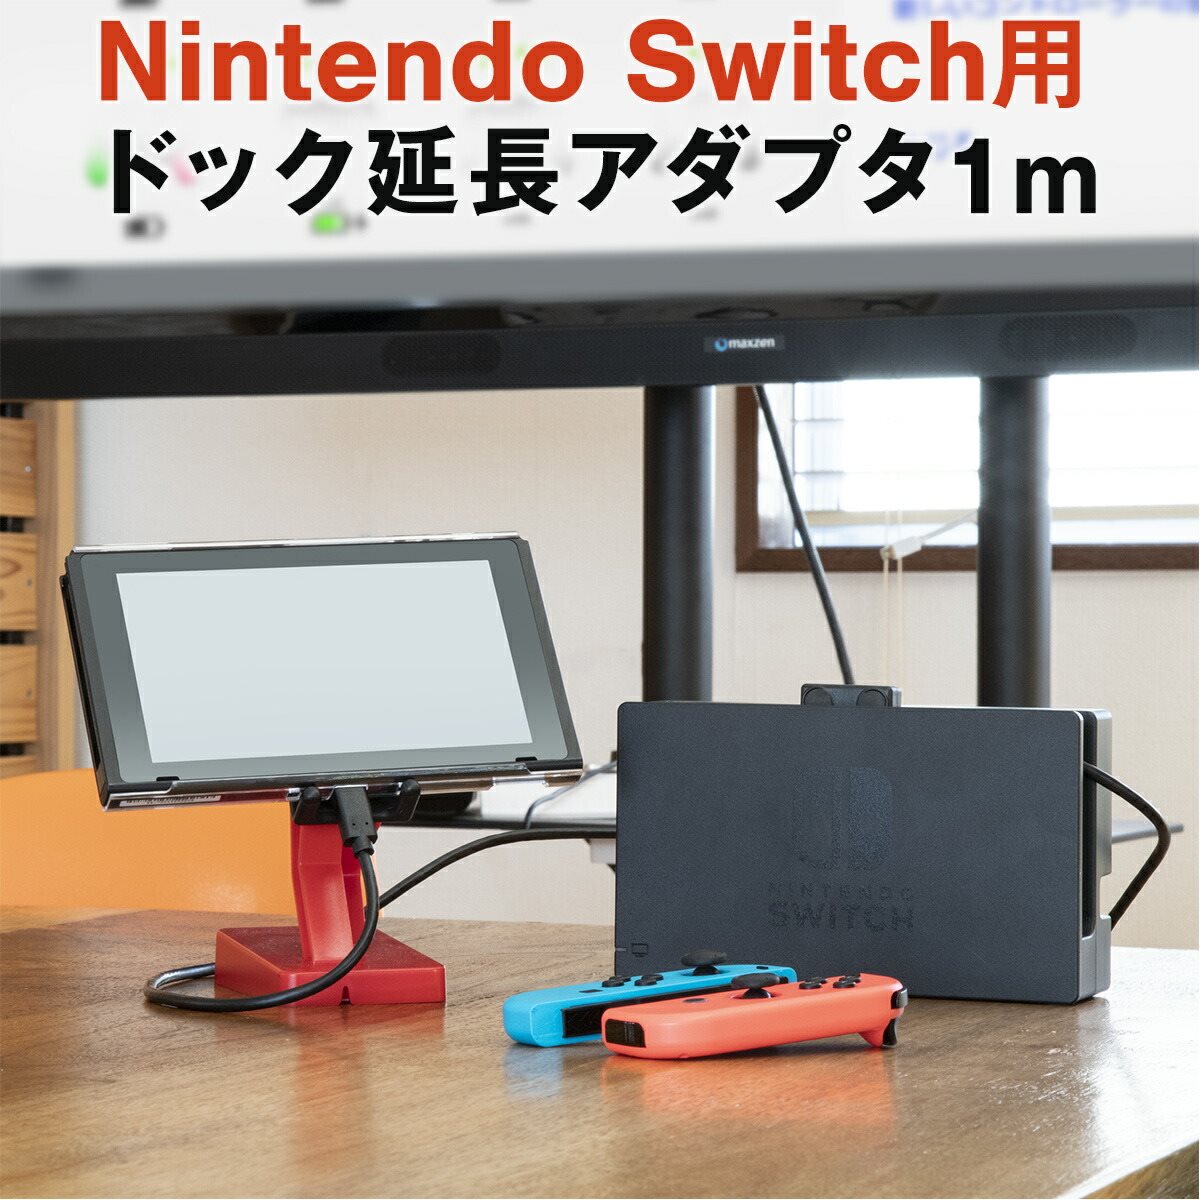 楽天市場 Nintendo Switch ニンテンドースイッチ Nintendo Switch用 アダプタ 延長 ケーブル 1m 充電 ドック 延長 ケーブル 名入れスマホケースエックスモール